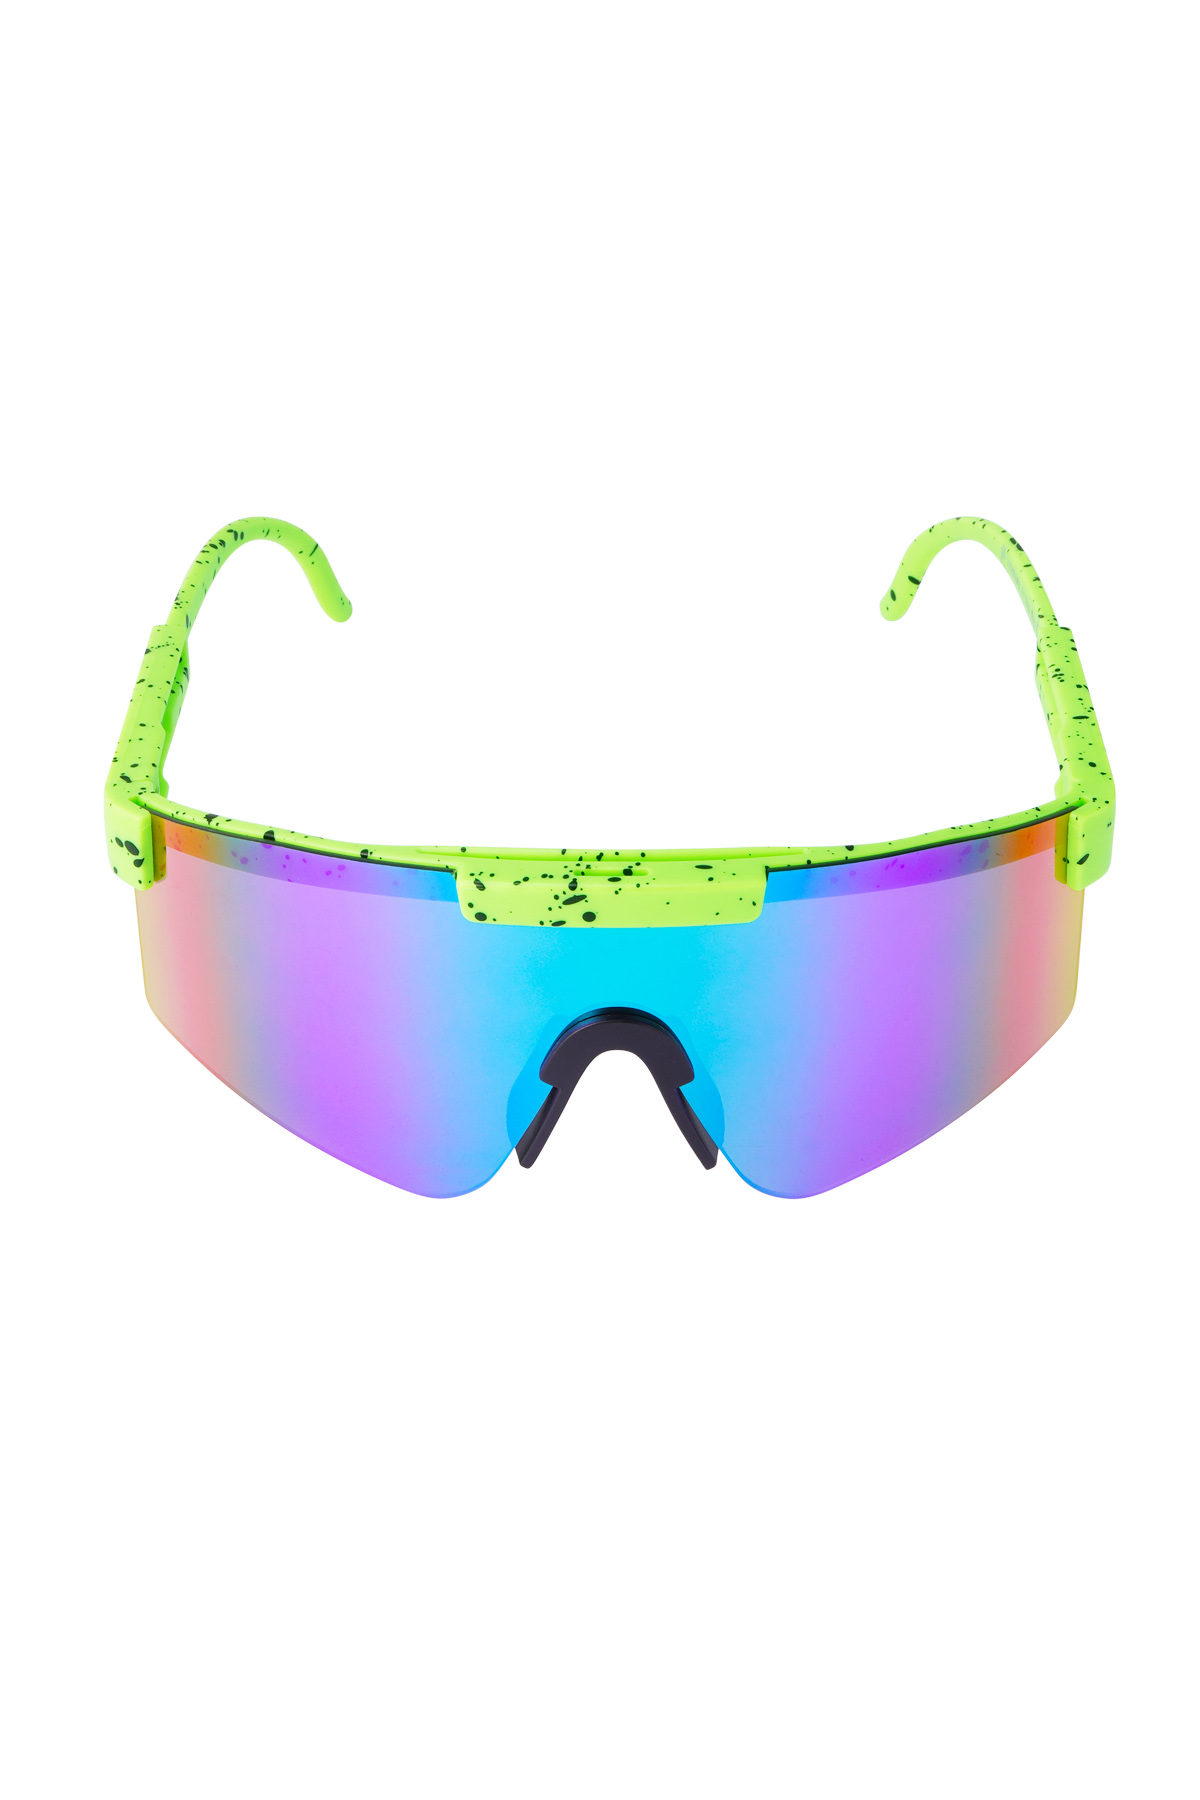 Güneş gözlüğü baskılı renkli lensler - yeşil h5 Resim6